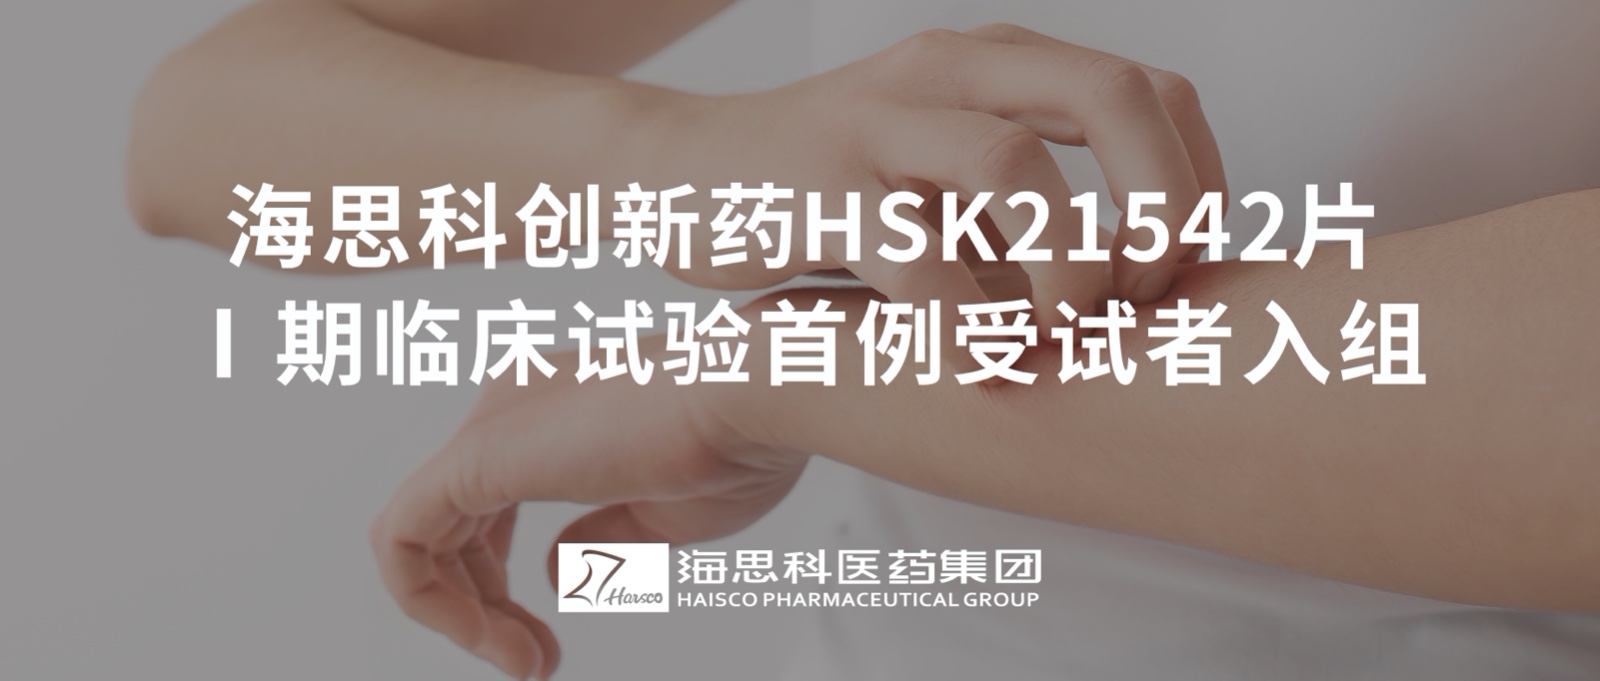 金沙贵宾3777线路检测中心创新药HSK21542片Ⅰ期临床试验首例受试者入组